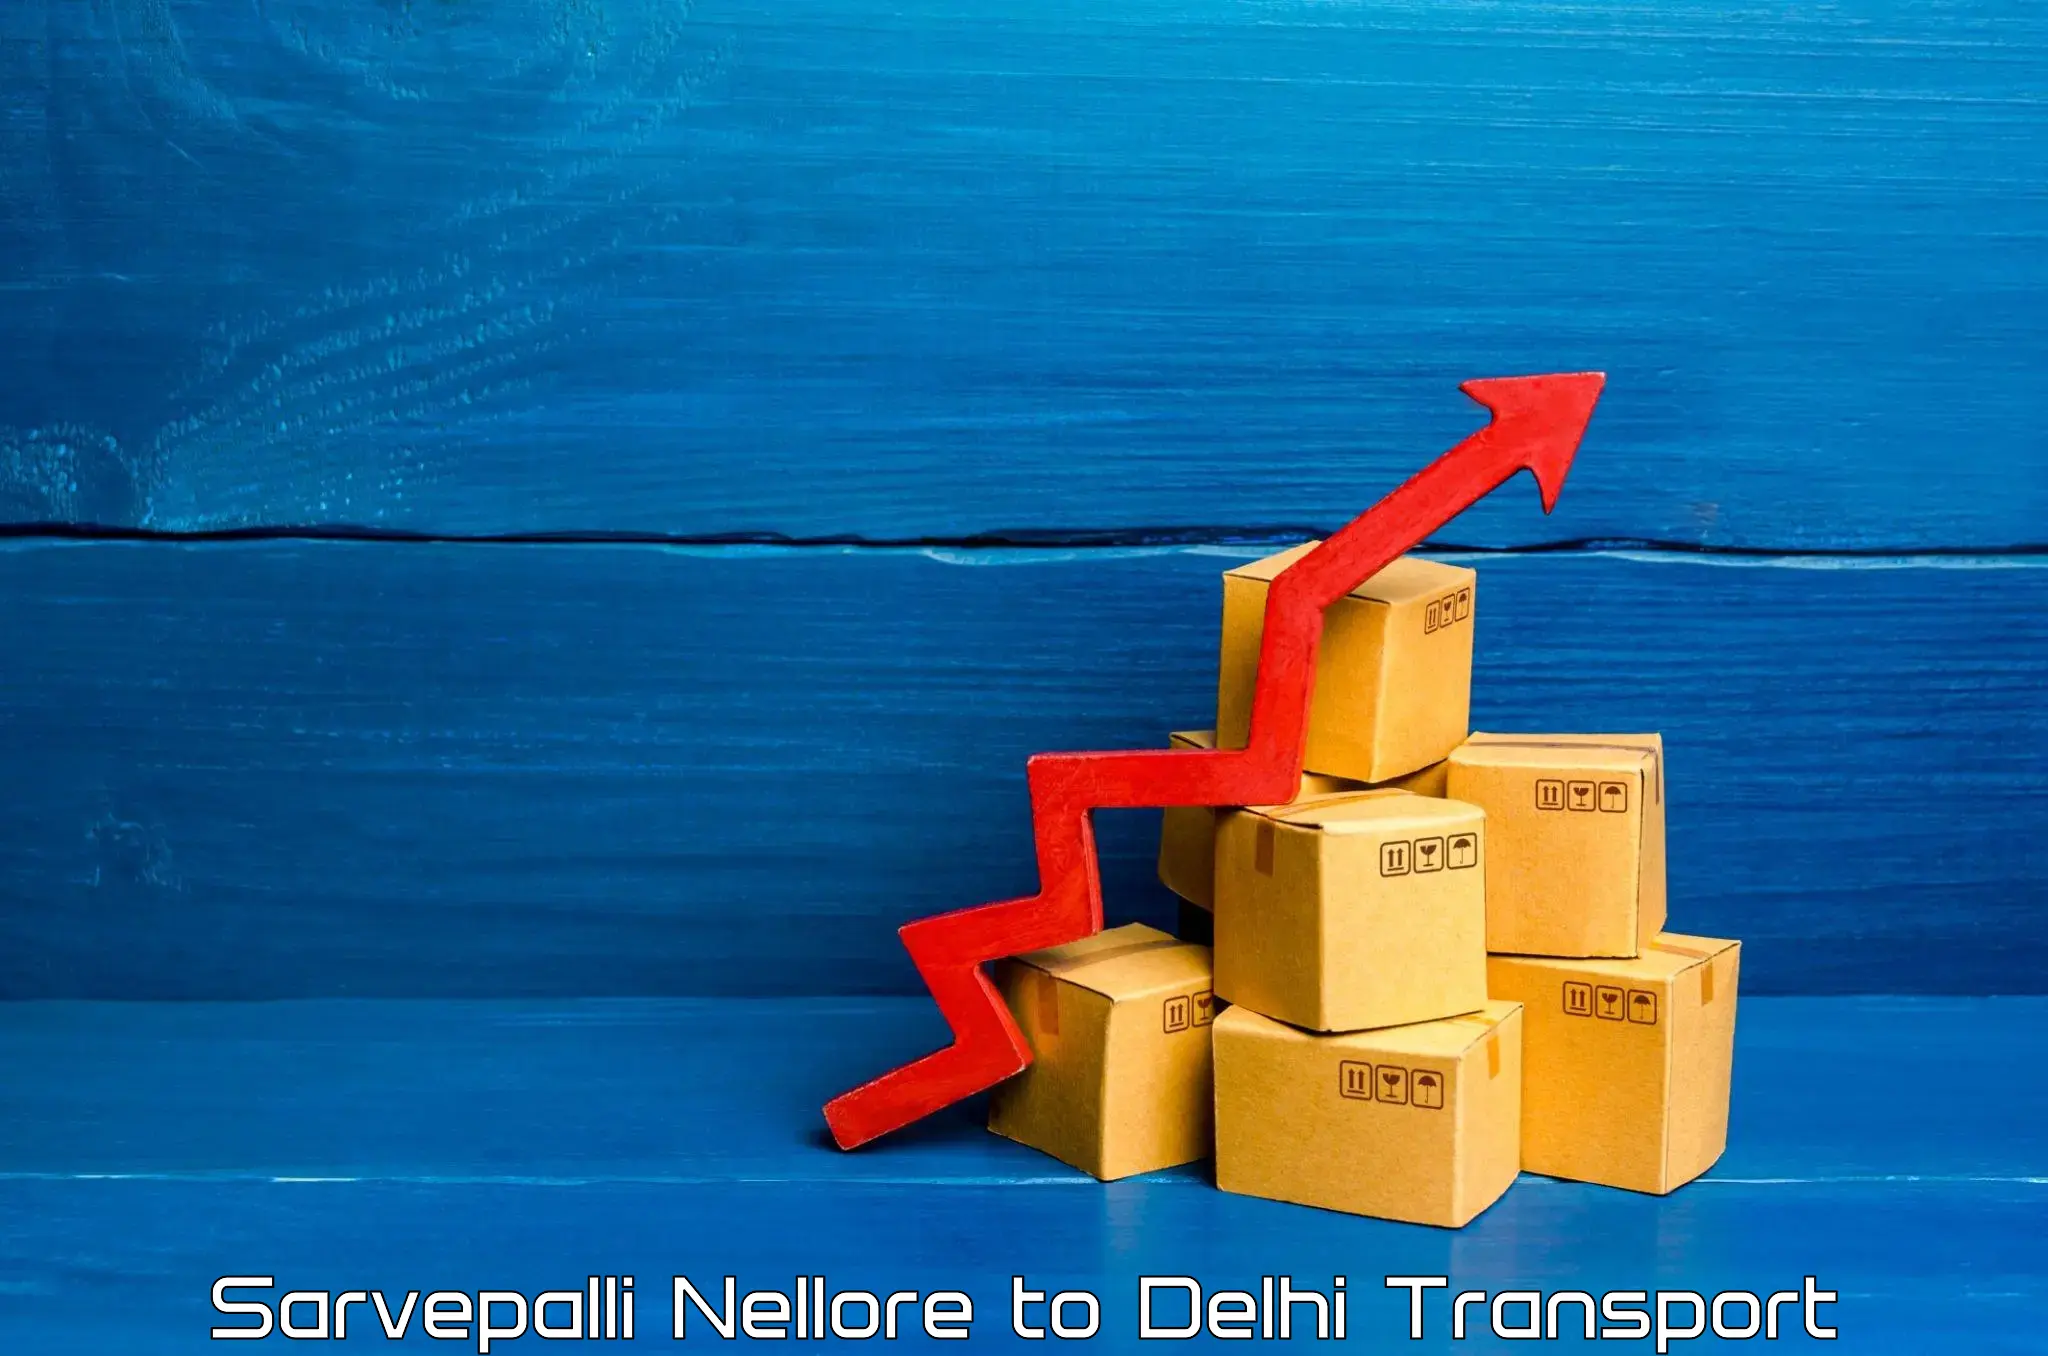 Domestic transport services Sarvepalli Nellore to IIT Delhi